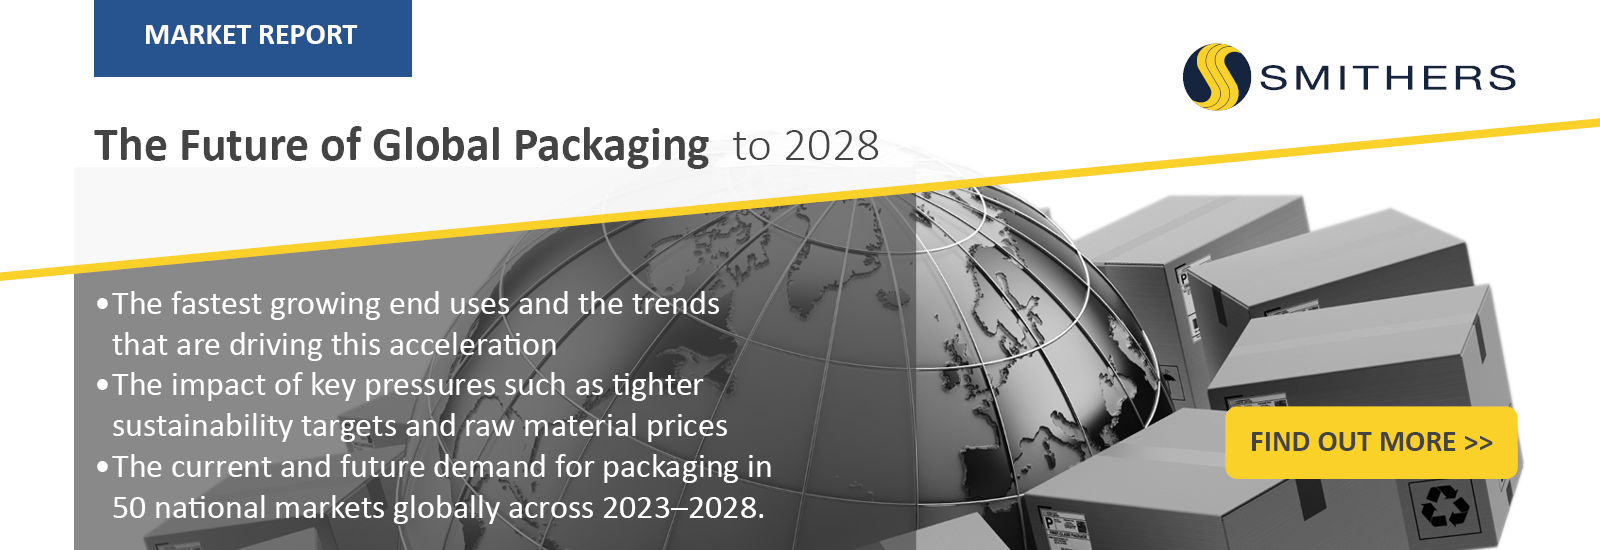 Global-packaging-2028-web-banner